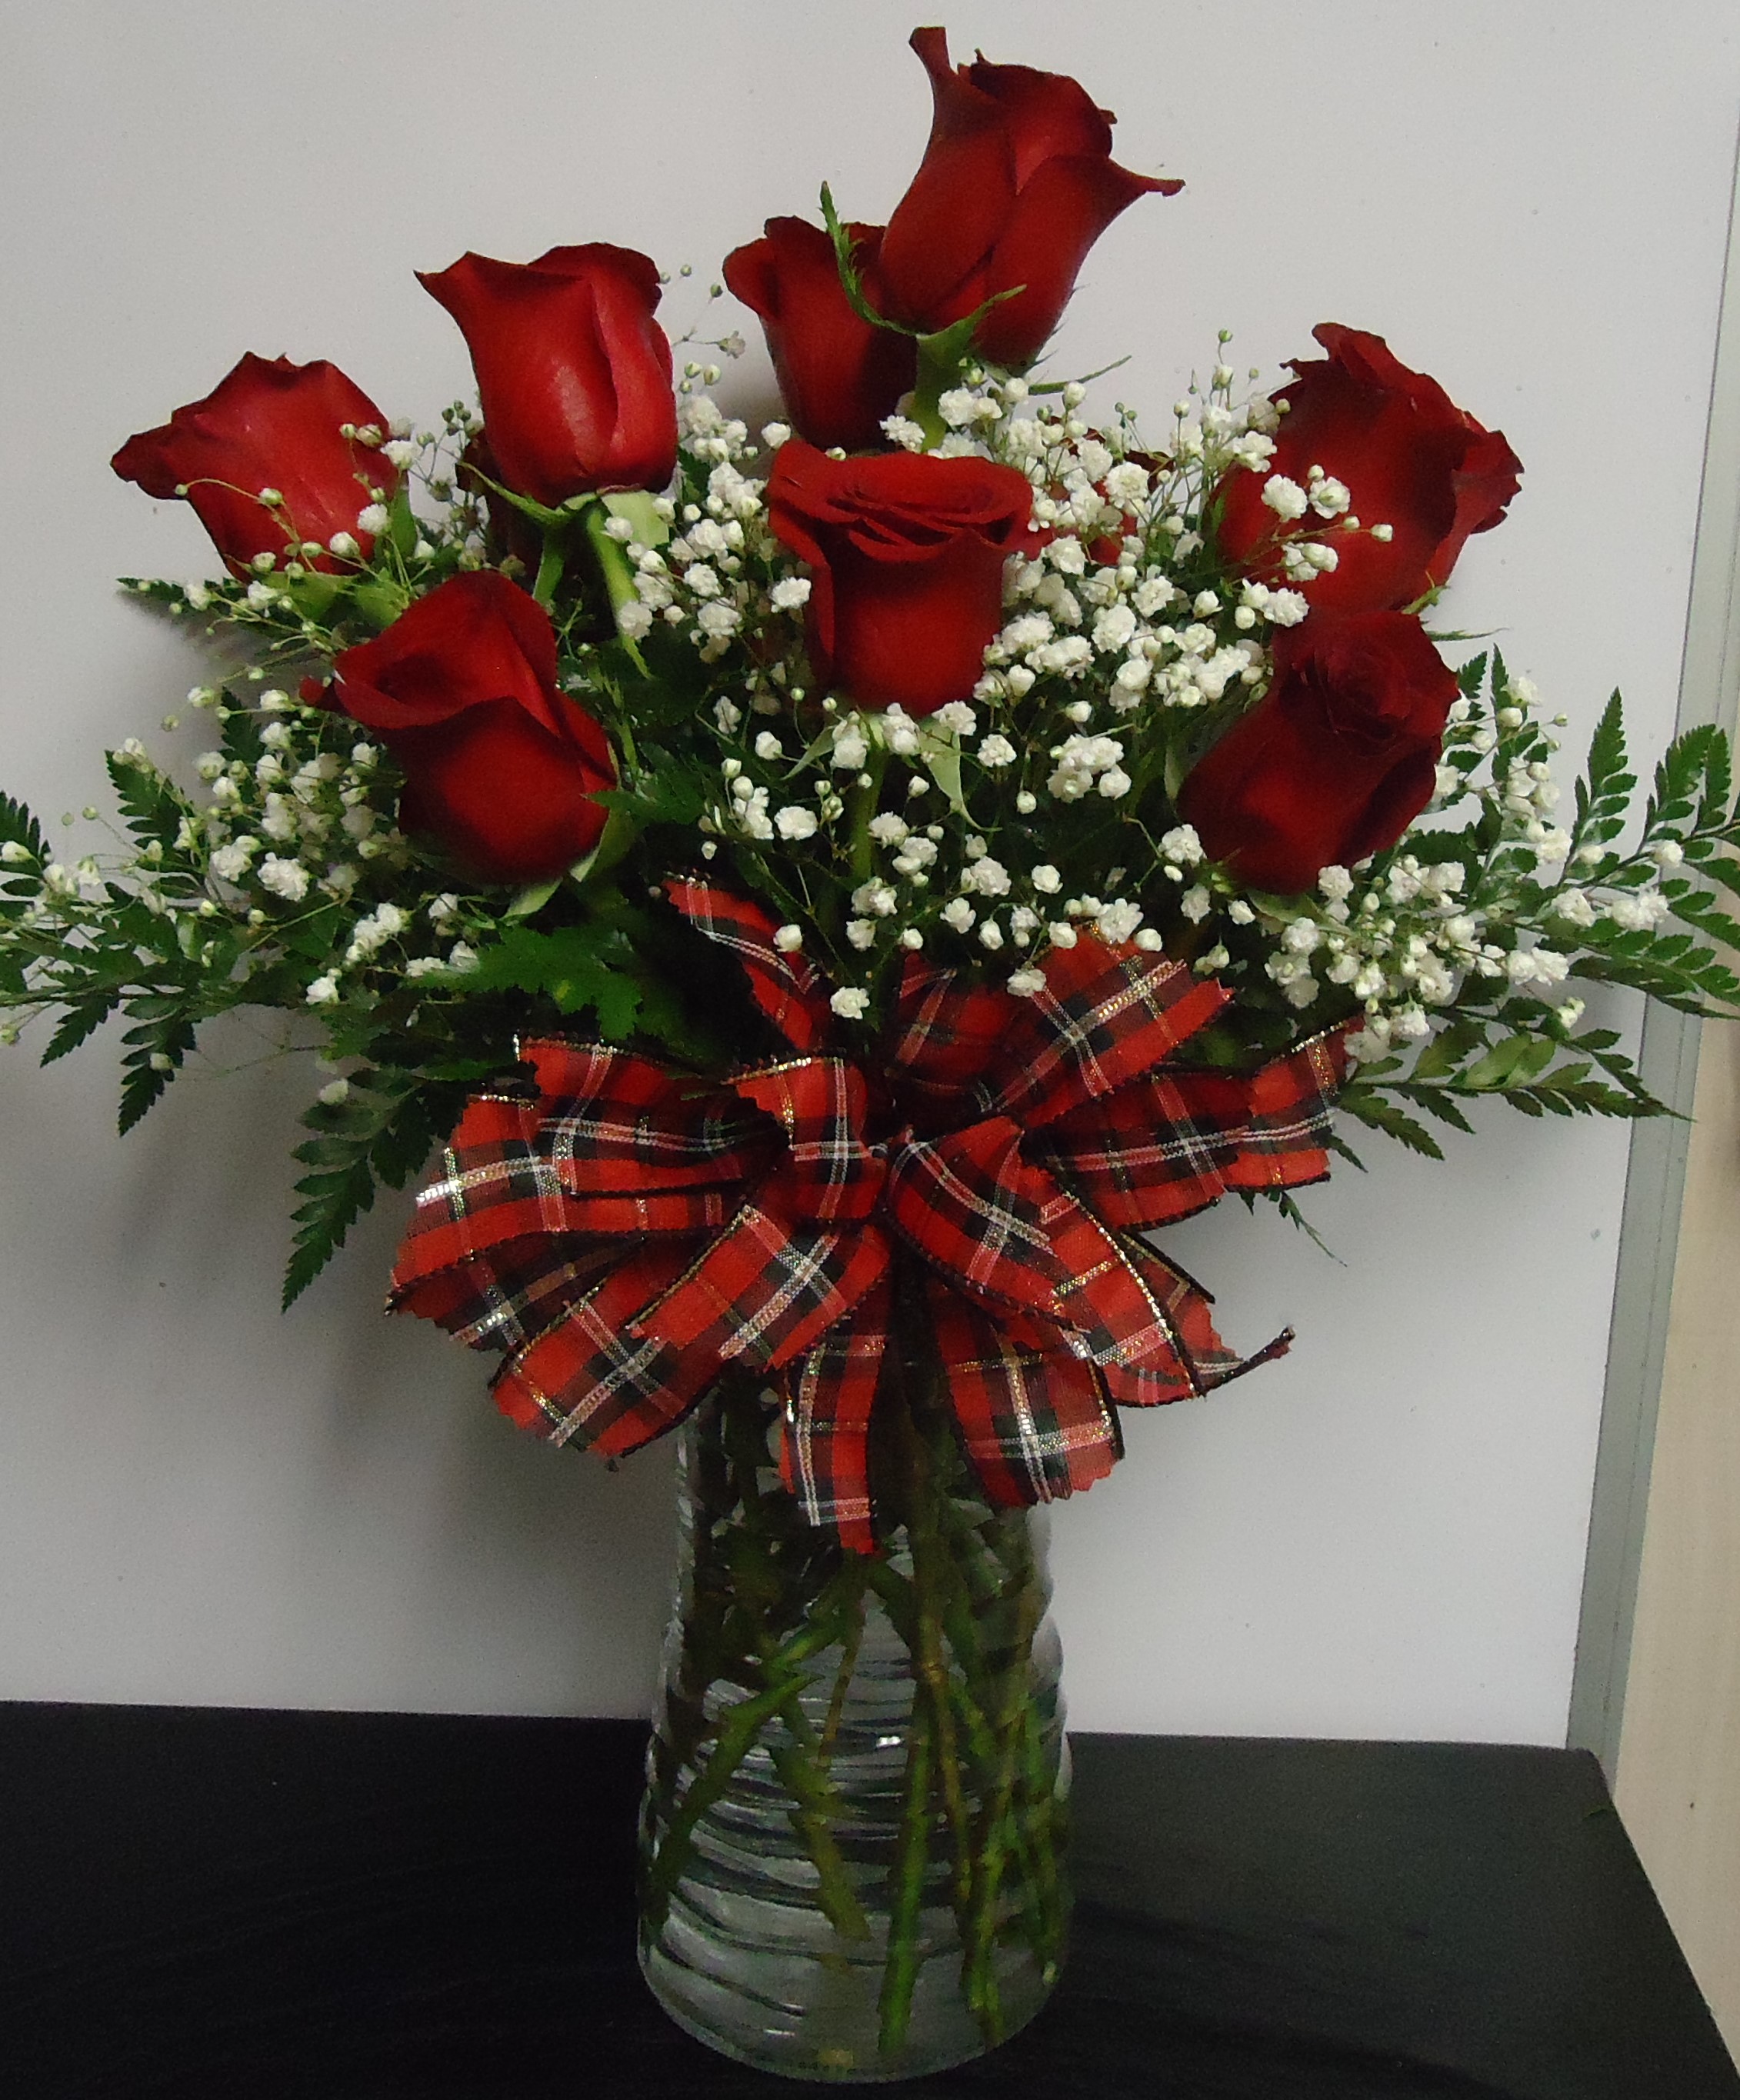 (2) "Dozen" Red Roses
$75.00